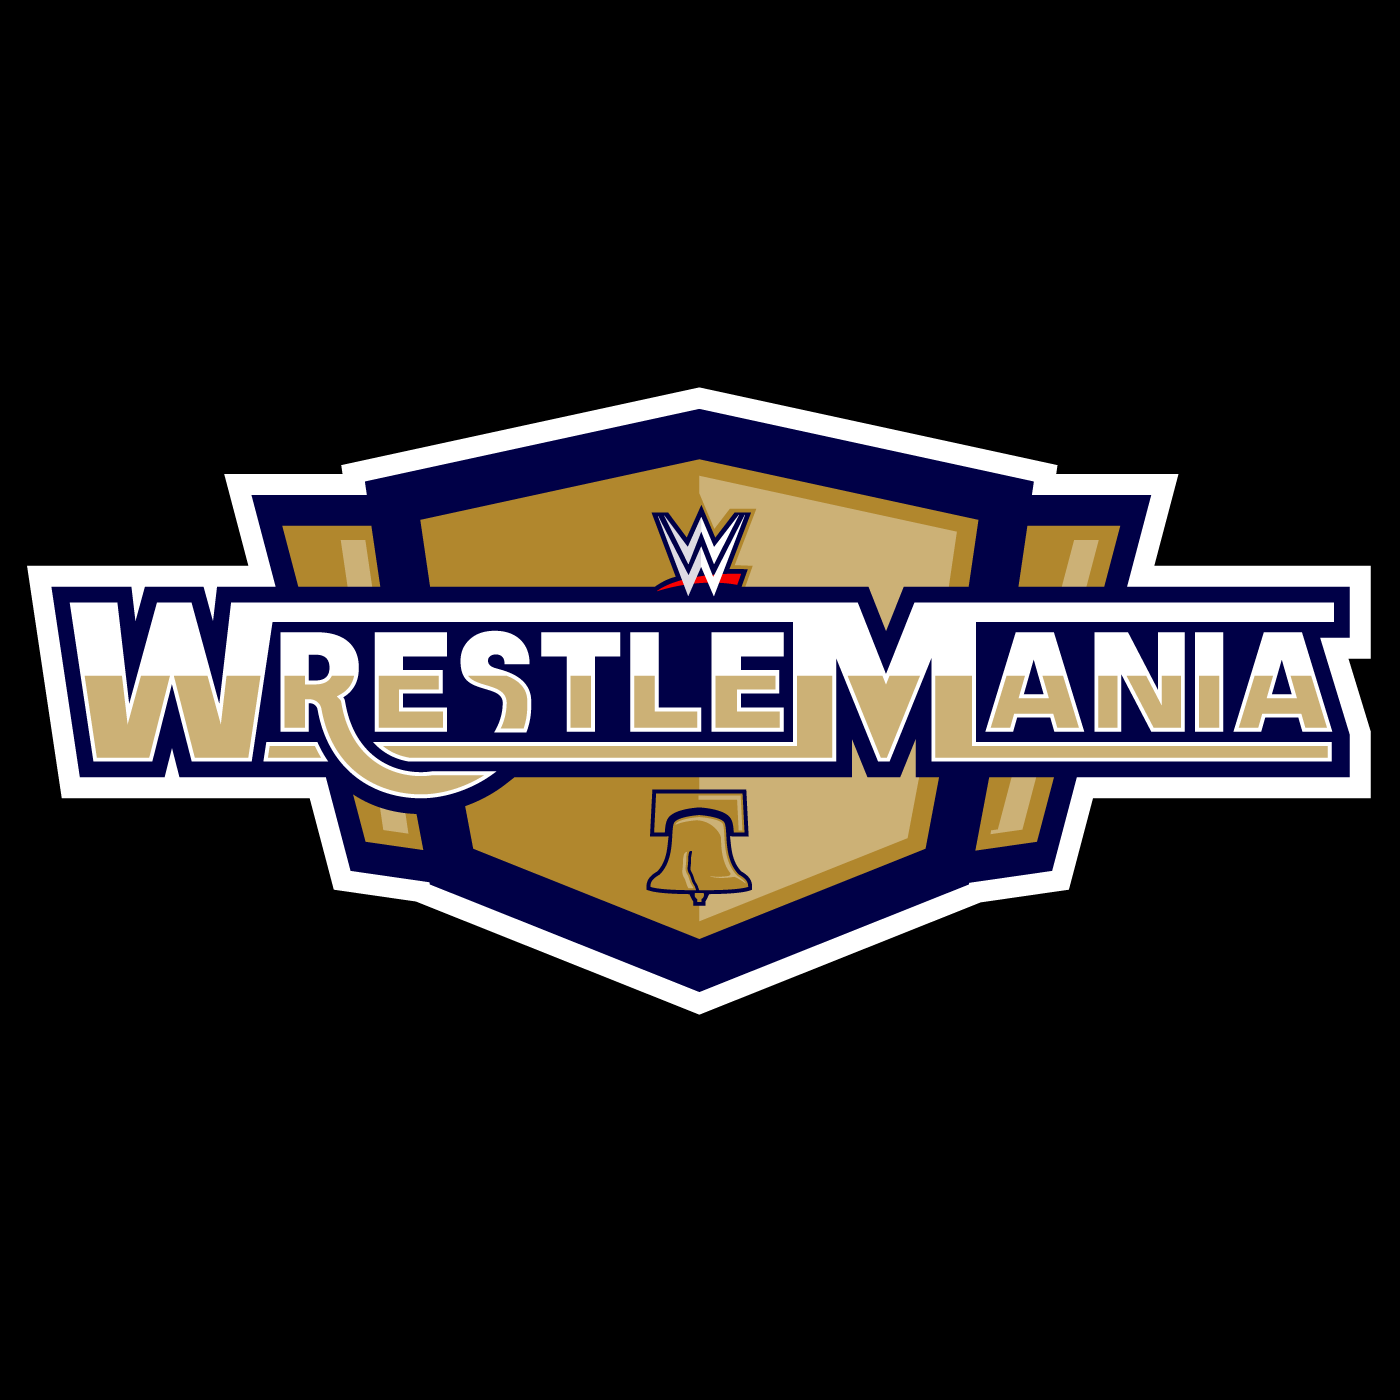 Xxxv Logo - WrestleMania XXXV - Concepts - Chris Creamer's Sports Logos ...